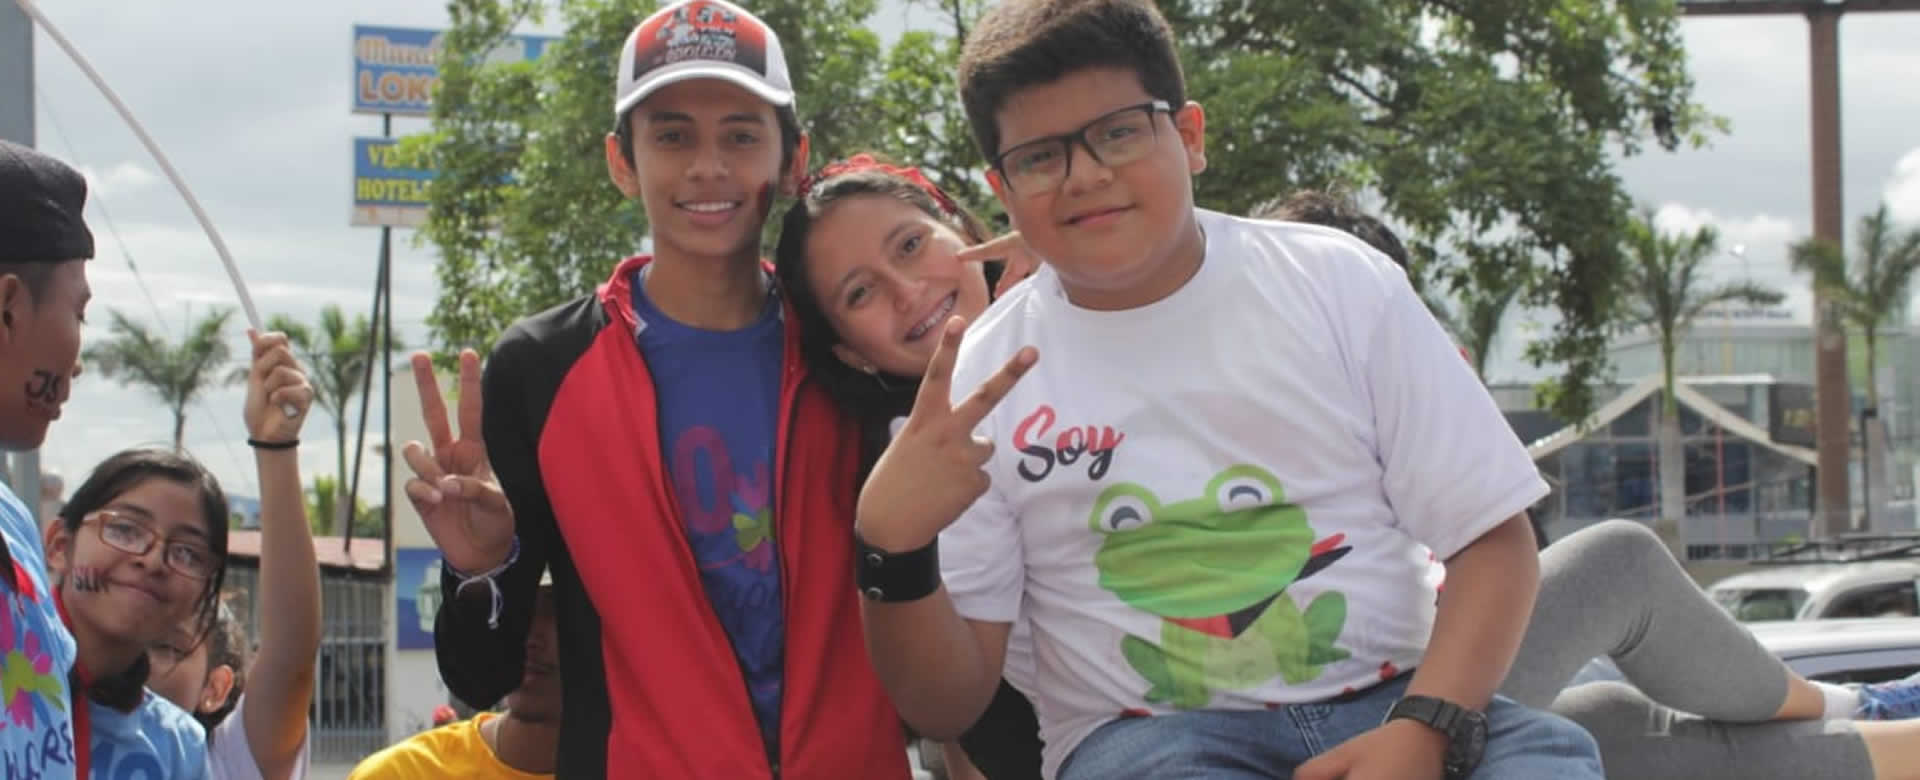 Repliegue reúne familias nicaragüenses desde los niños más pequeños